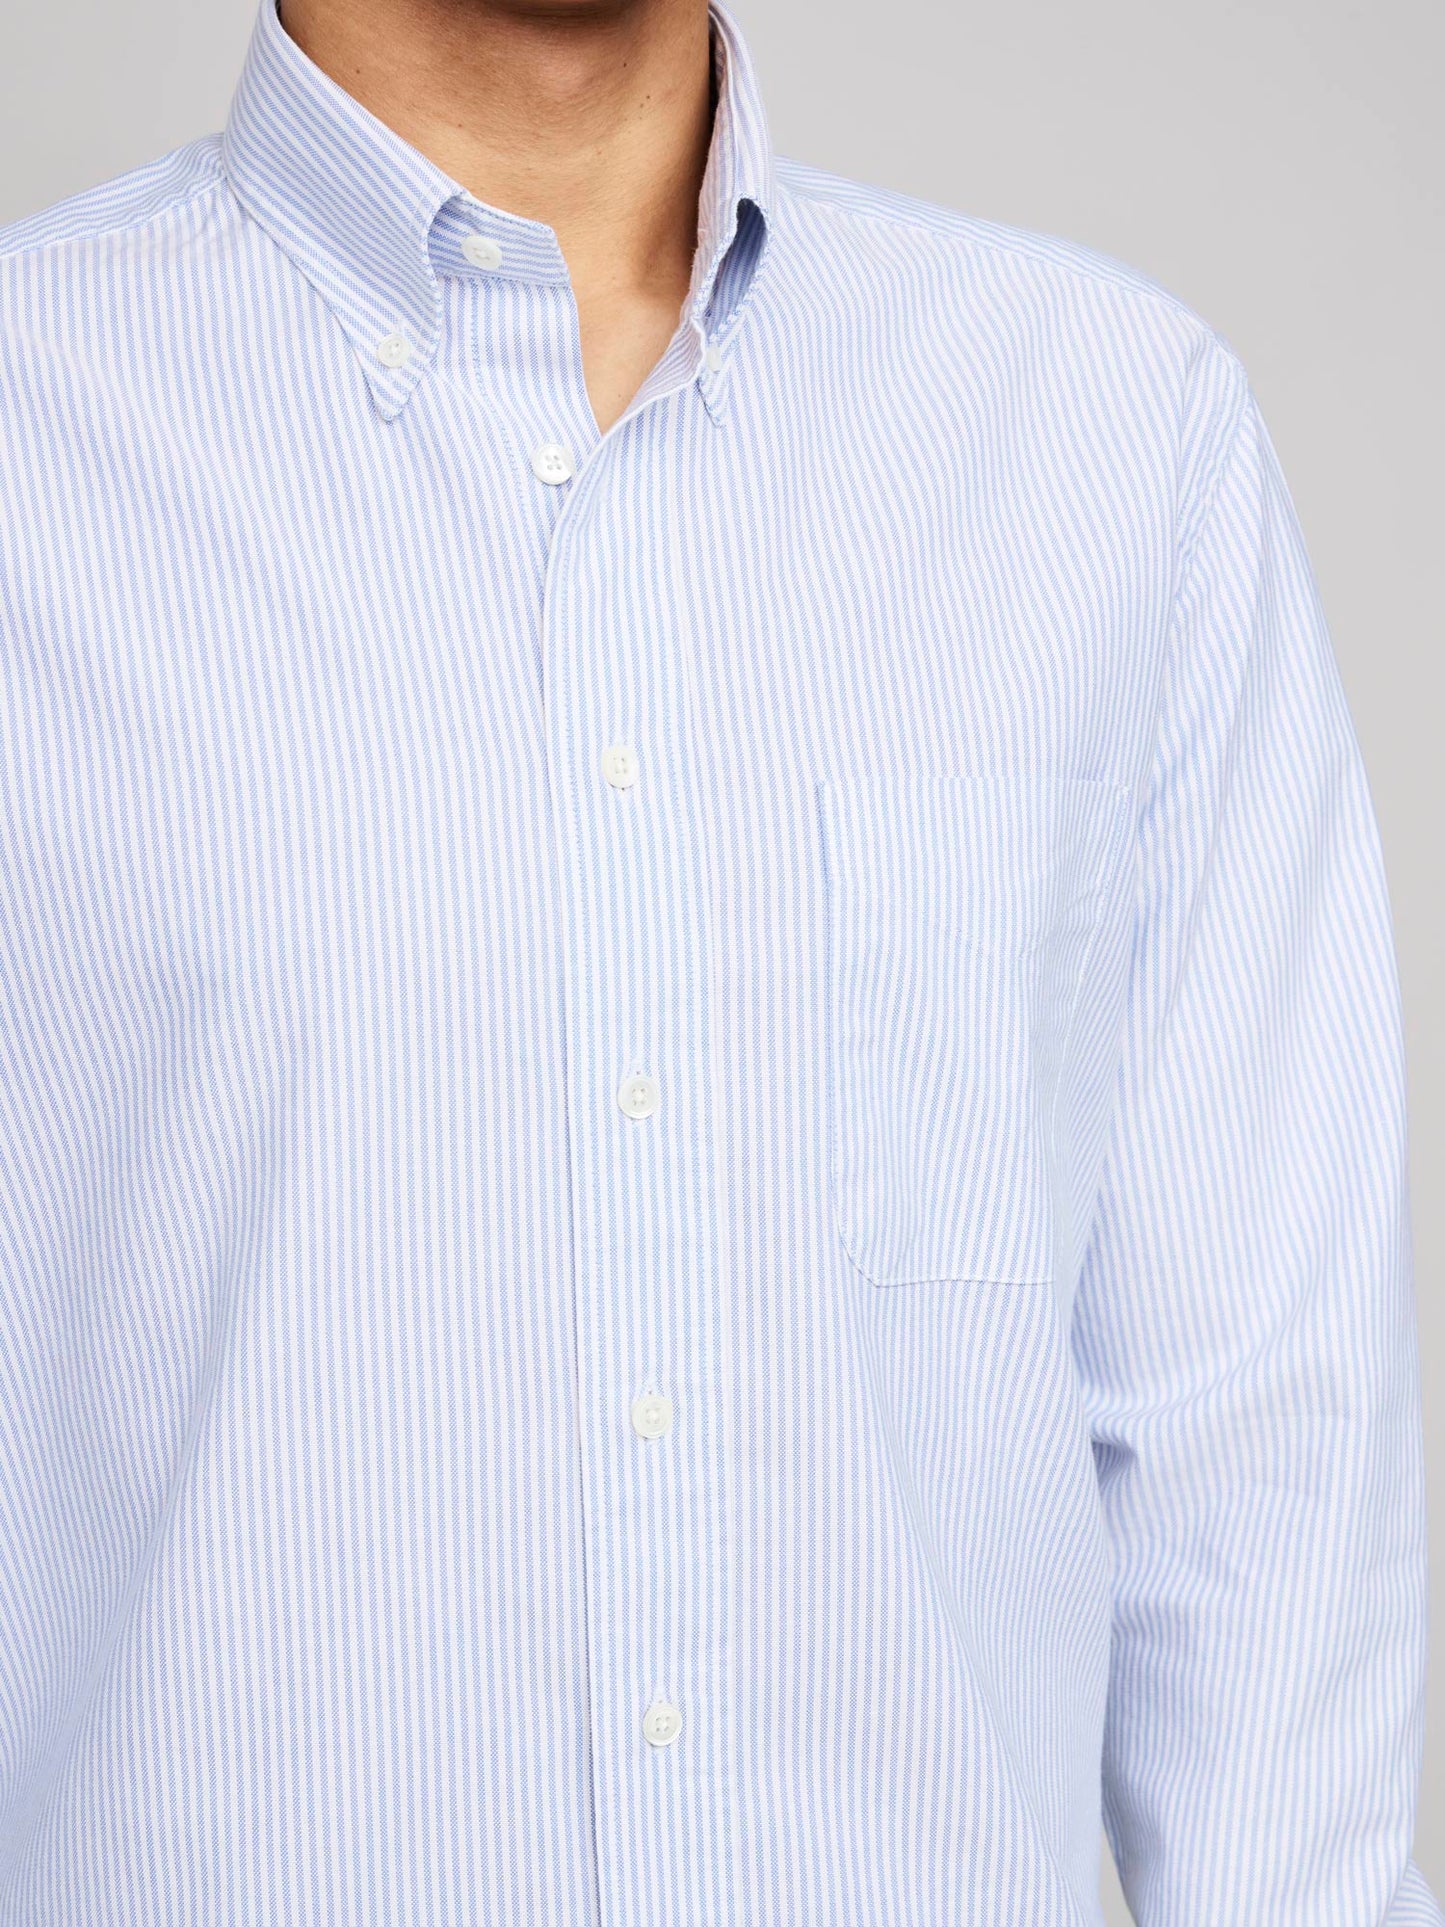 American BD Oxford Shirt, Blue/White Stripe